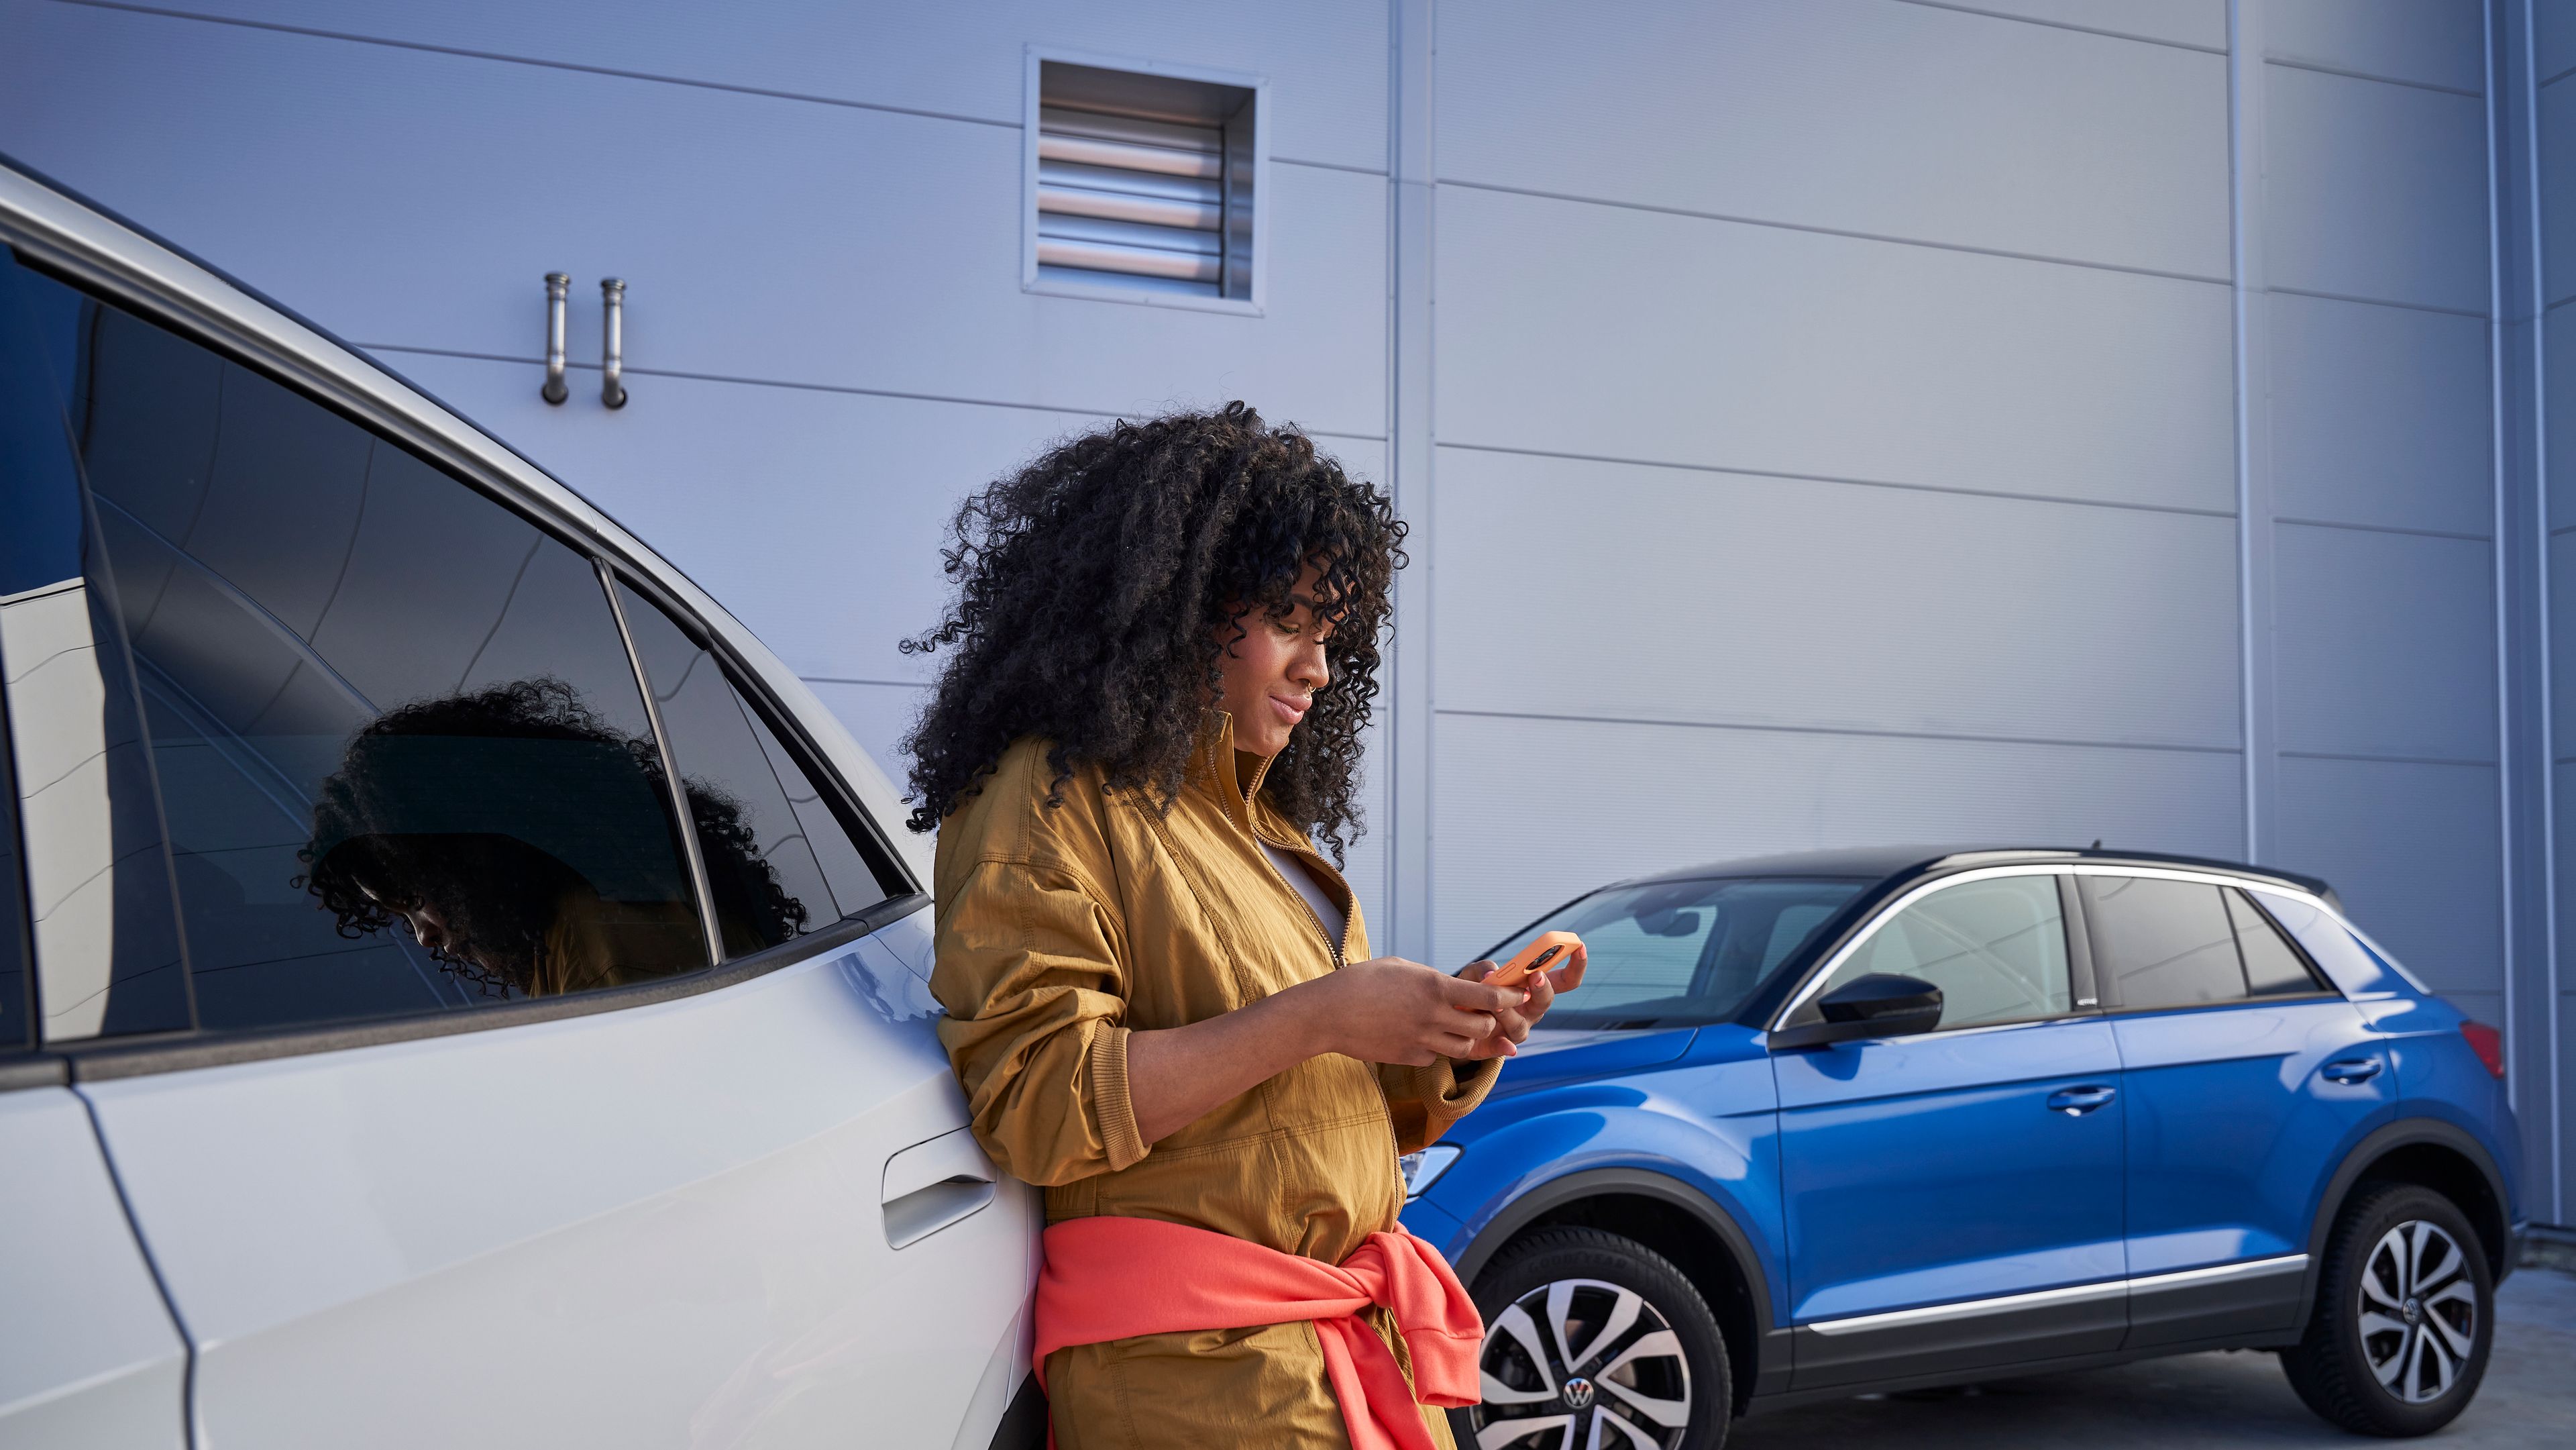 Frau lehnt an Volkswagen und blickt auf ihr Smartphone, im Hintergrund sieht man einen blauen T-Roc